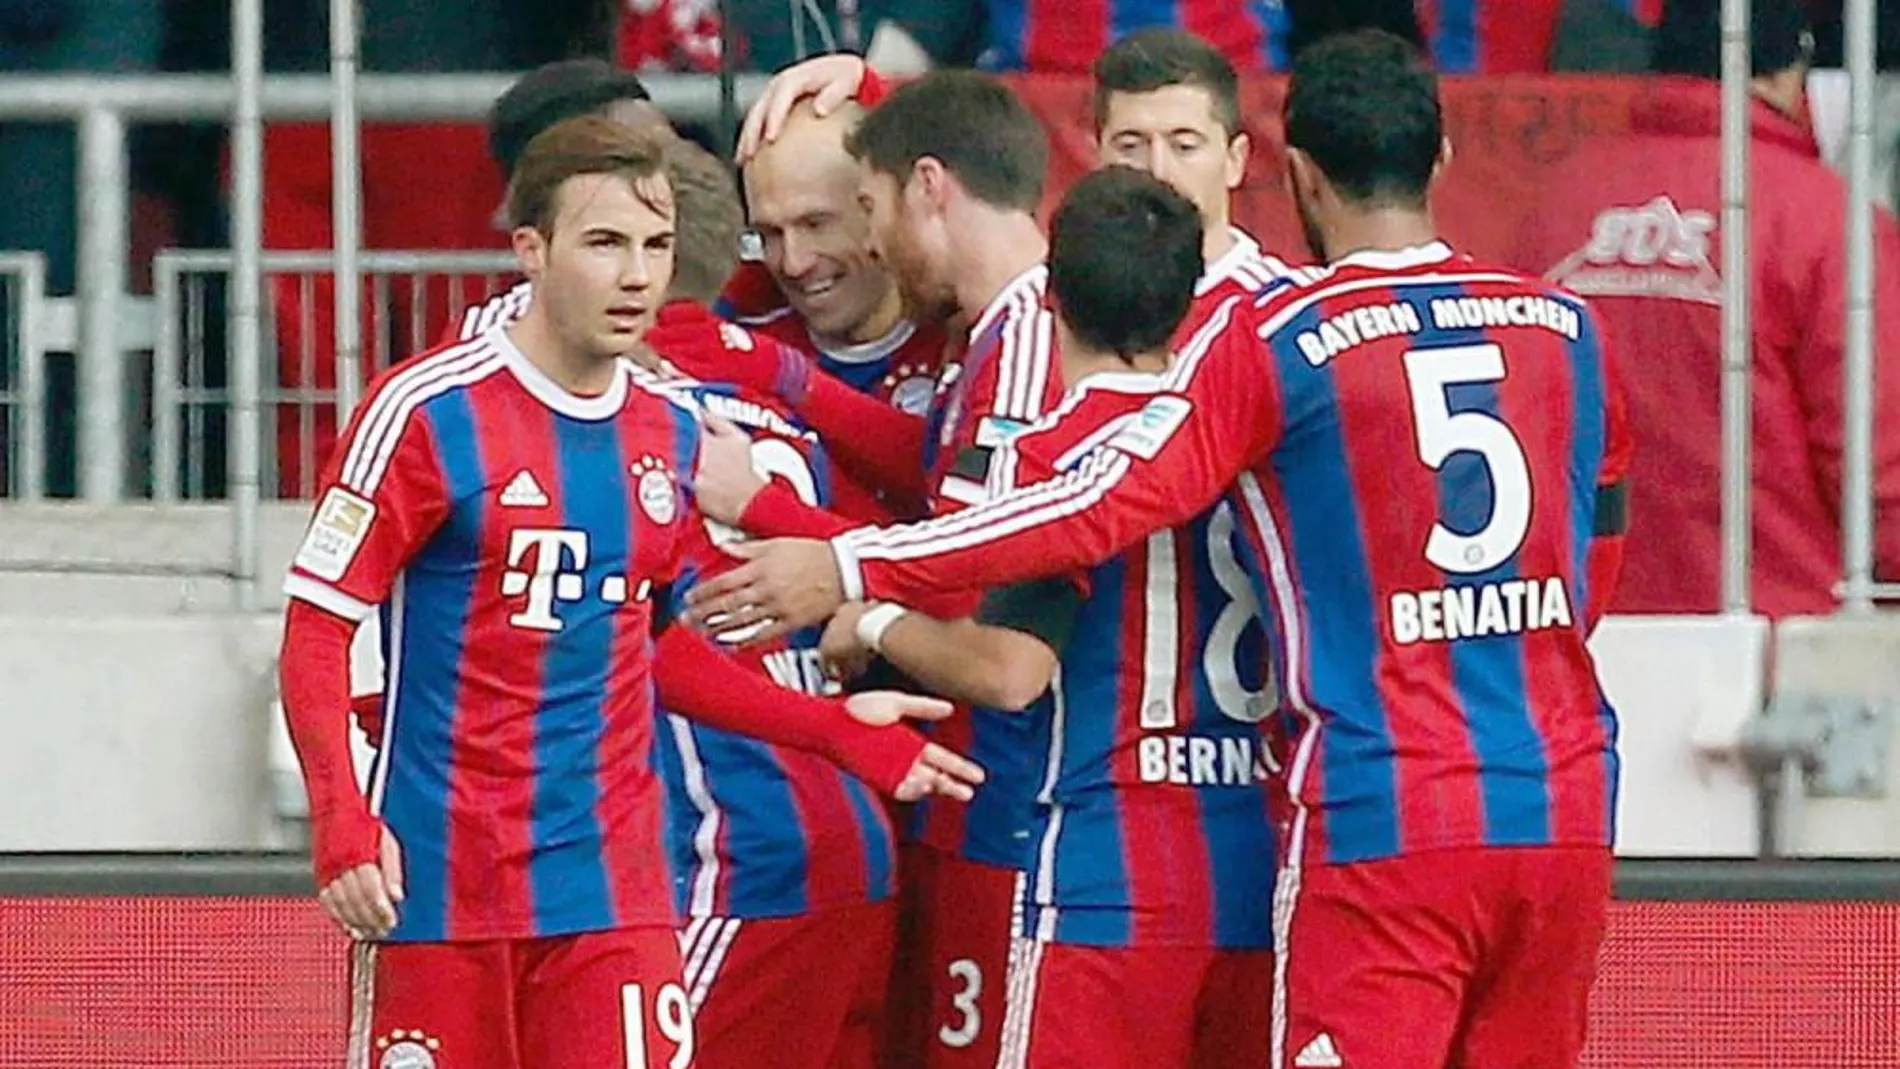 Sus compañeros abrazan a Robben tras anotar el primer gol del partido.